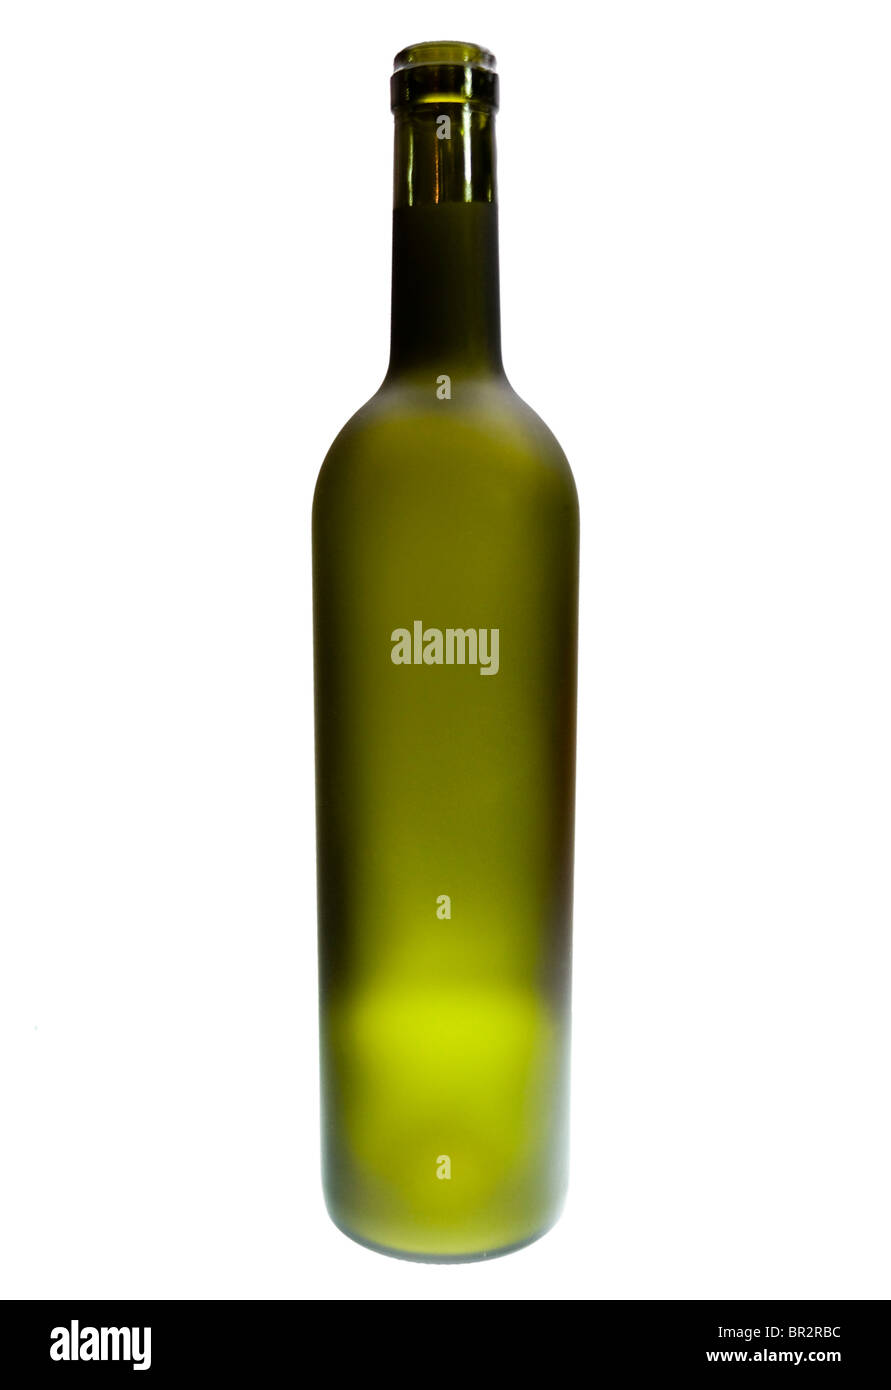 Les bouteilles de boissons alcoolisées vert sur fond blanc Banque D'Images